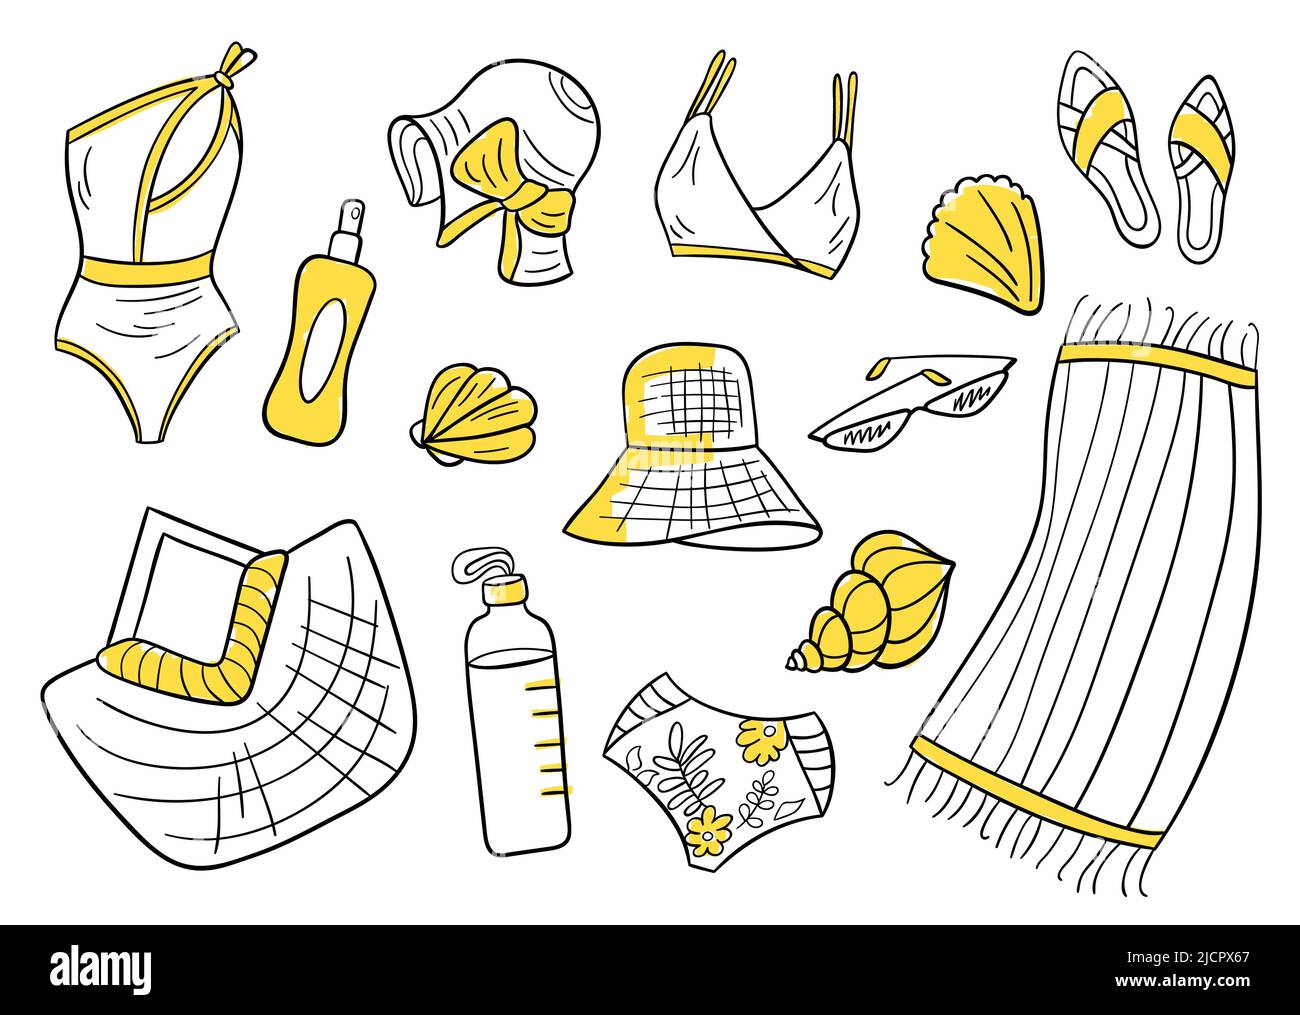 Conjunto de artículos de verano de estilo dibujado a mano. Sencillos iconos  de diseño minimalista. Traje de baño de playa, sombrero de panamá, gafas de  sol, toalla, botella de agua, concha, chanclas,